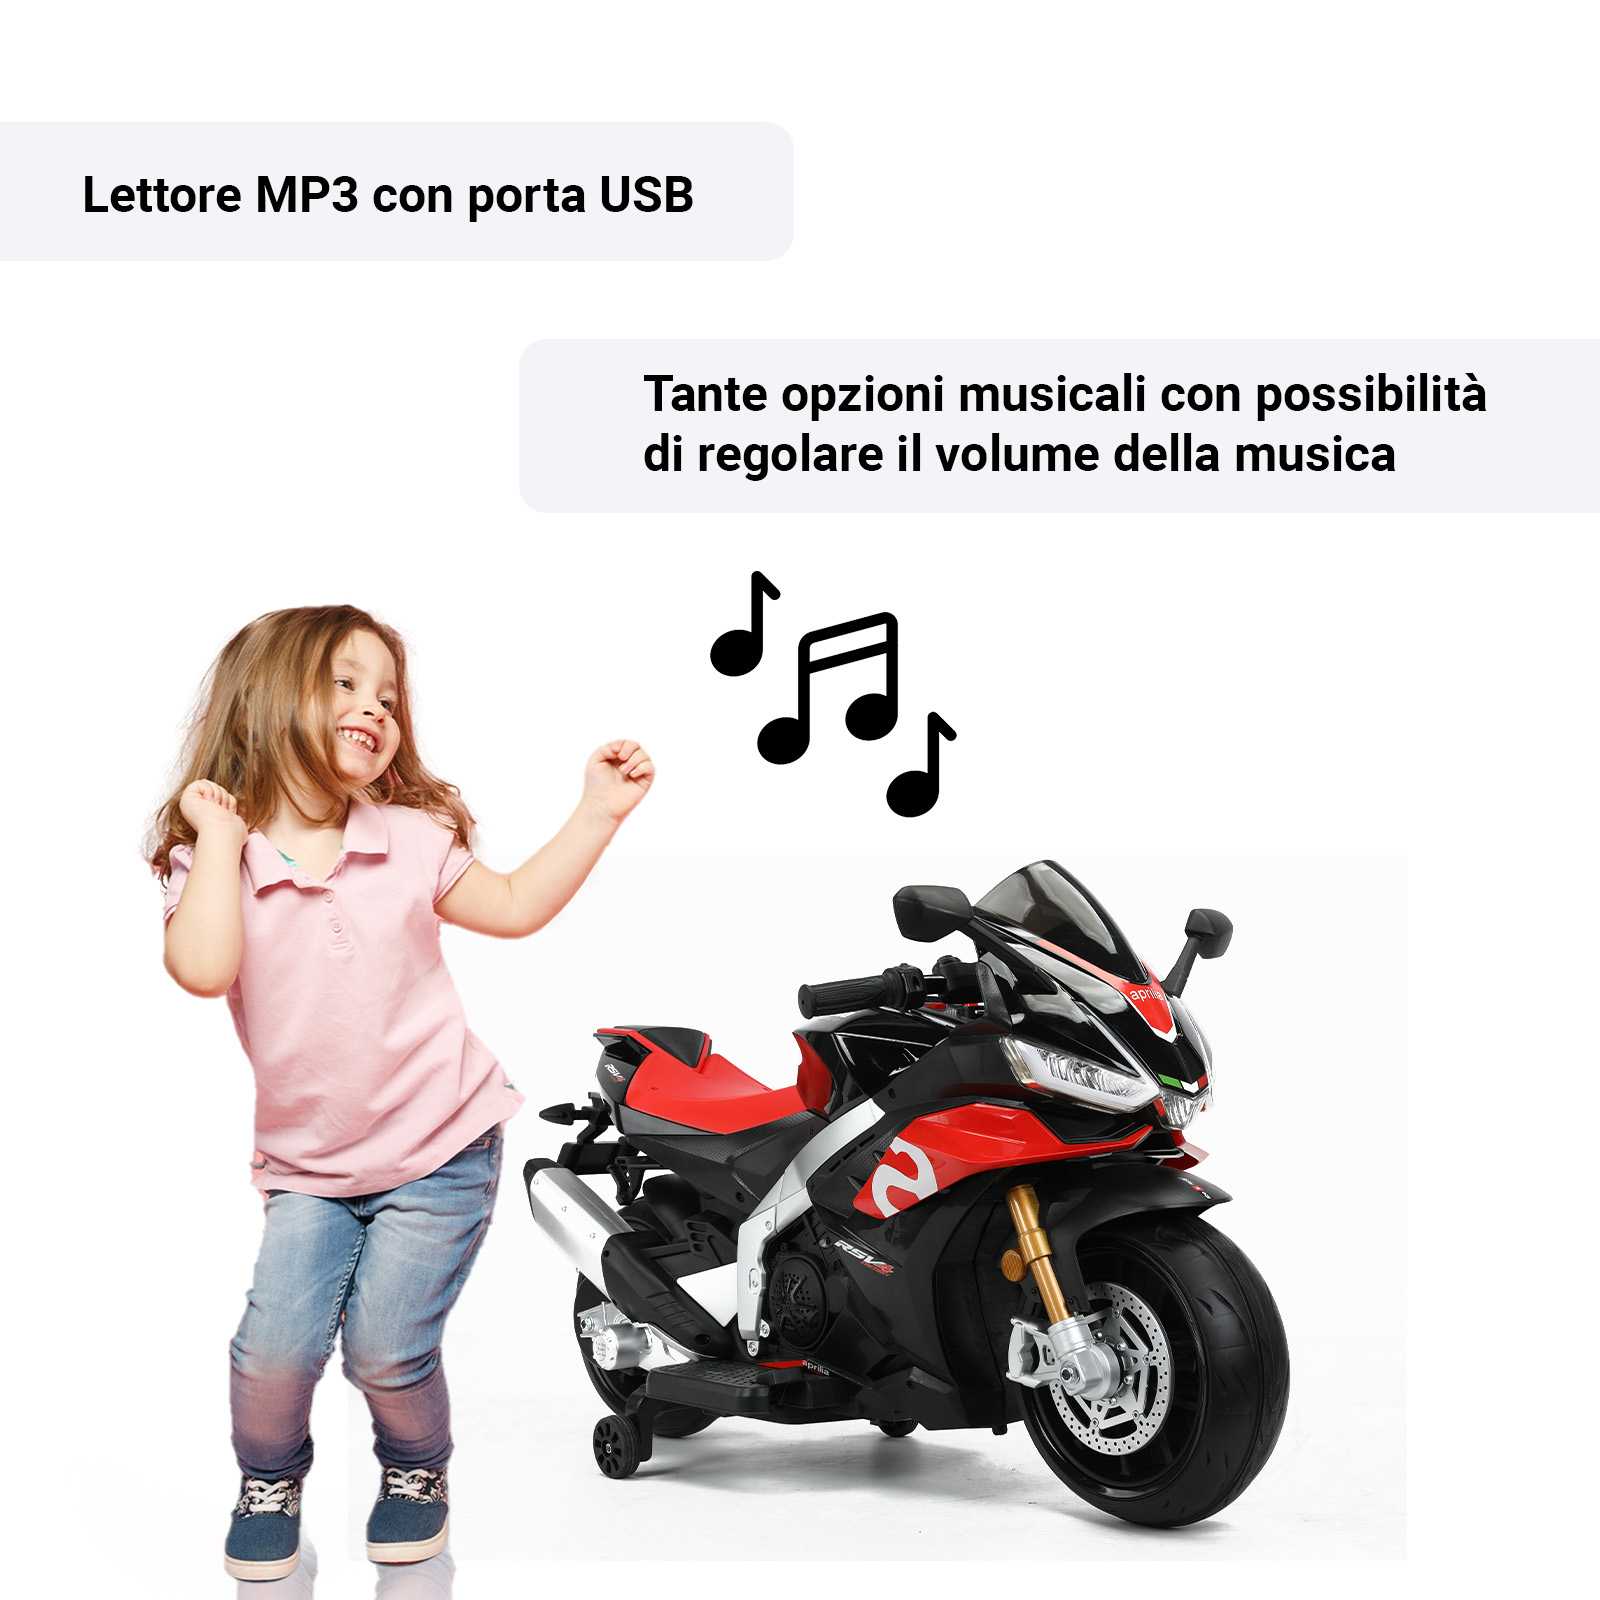 Lettore MP3 porte USB e opzioni musicali 